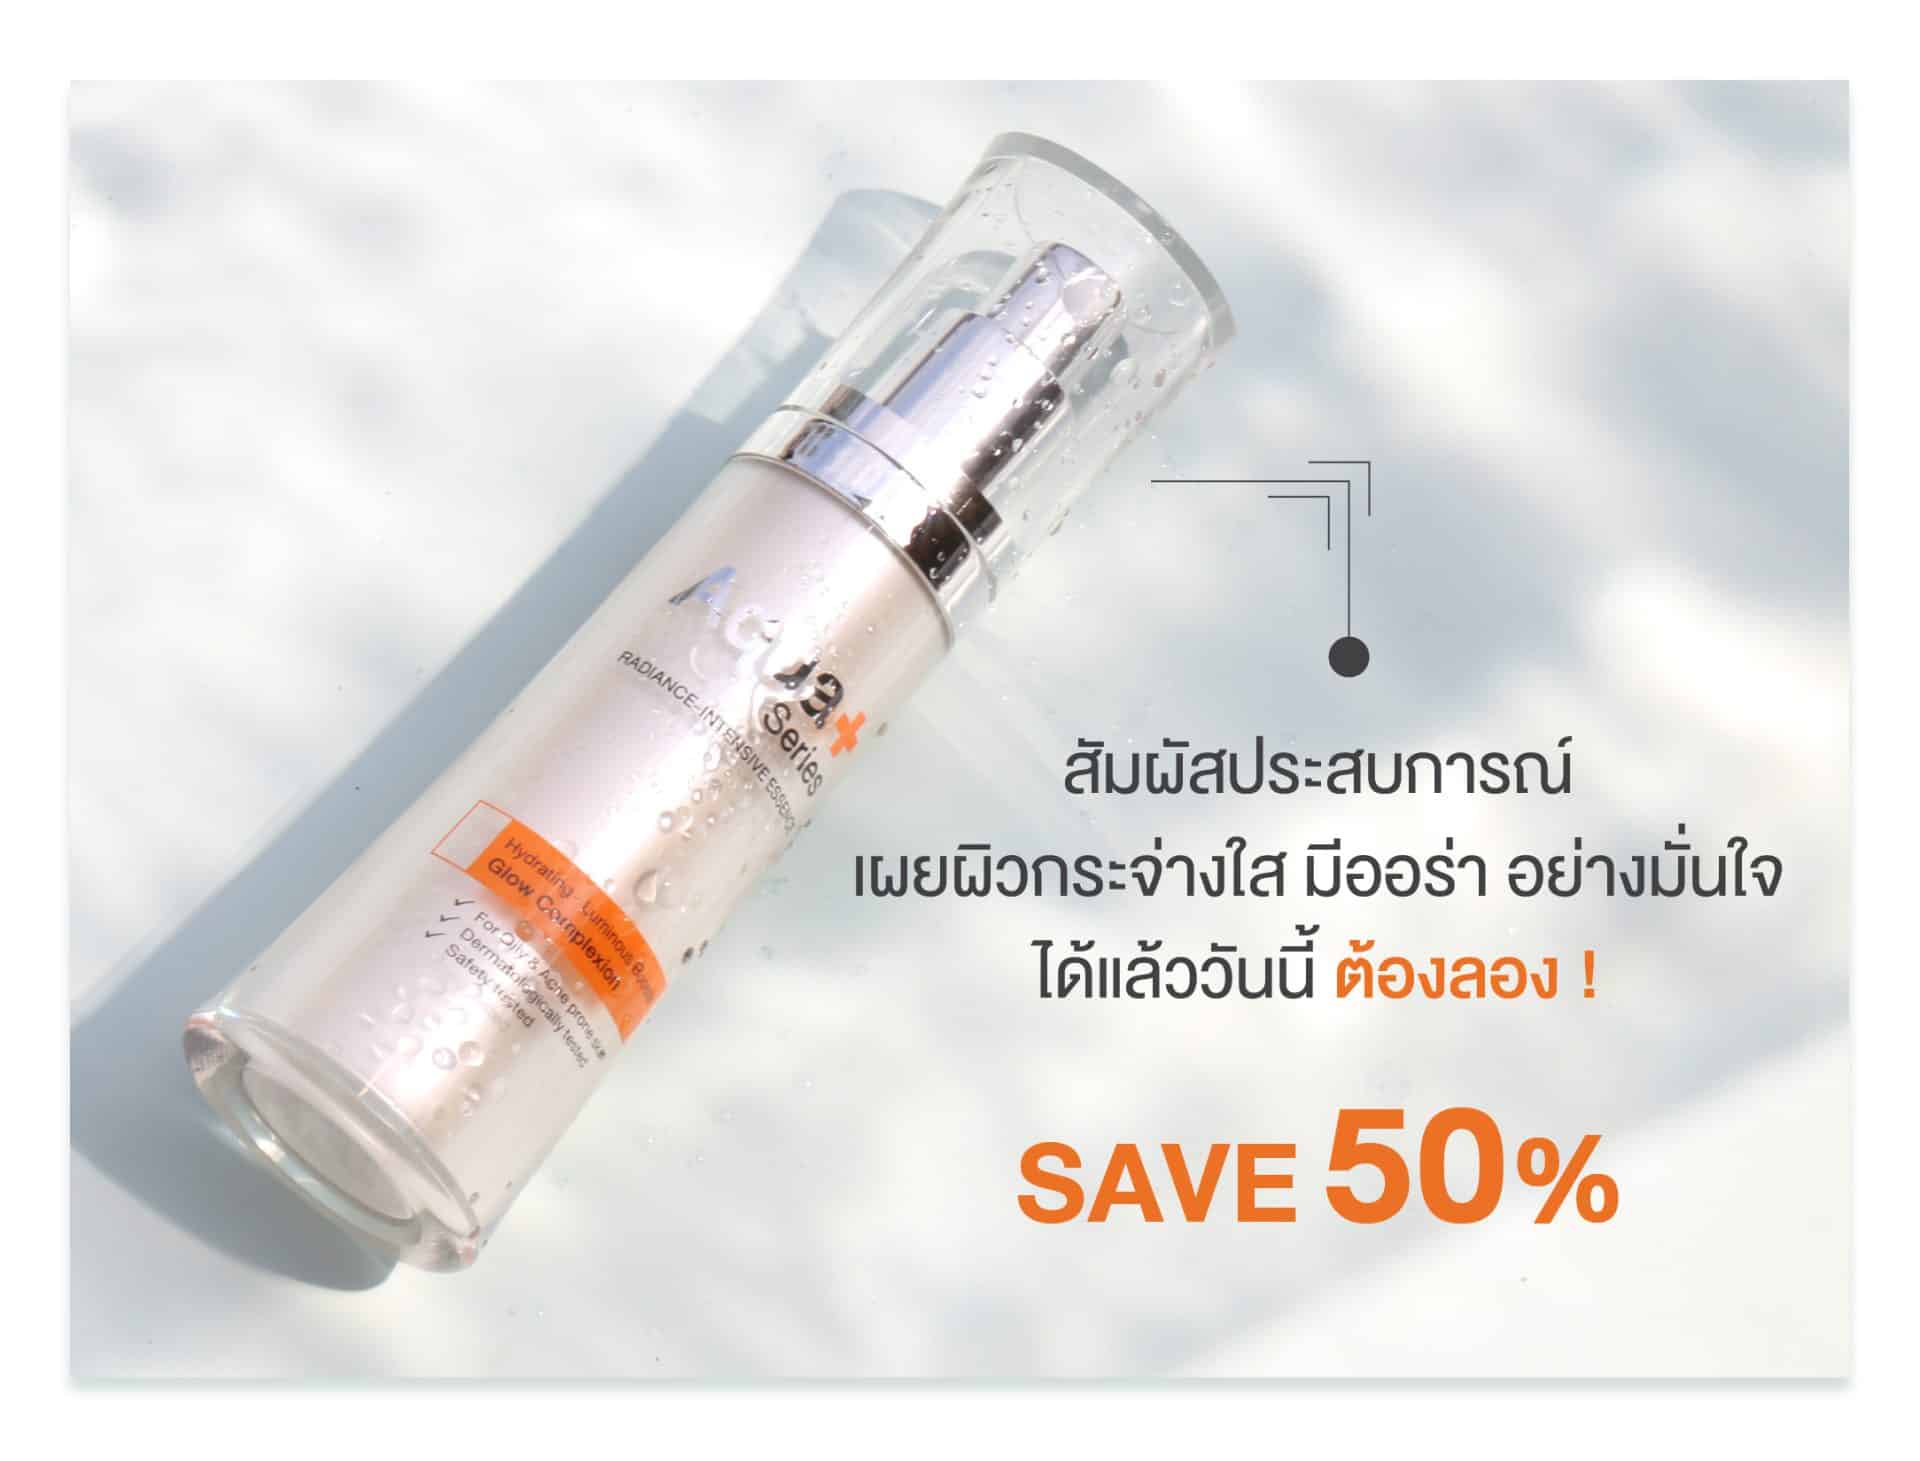 (ซื้อ 1 ฟรี 1) เอสเซนส์ Radiance-Intensive Essence (เลือกรับฟรี Multi-Protection Sunscreen SPF50+/PA++++ หรือ Private Enriched Serum) | AquaPlus Thailand